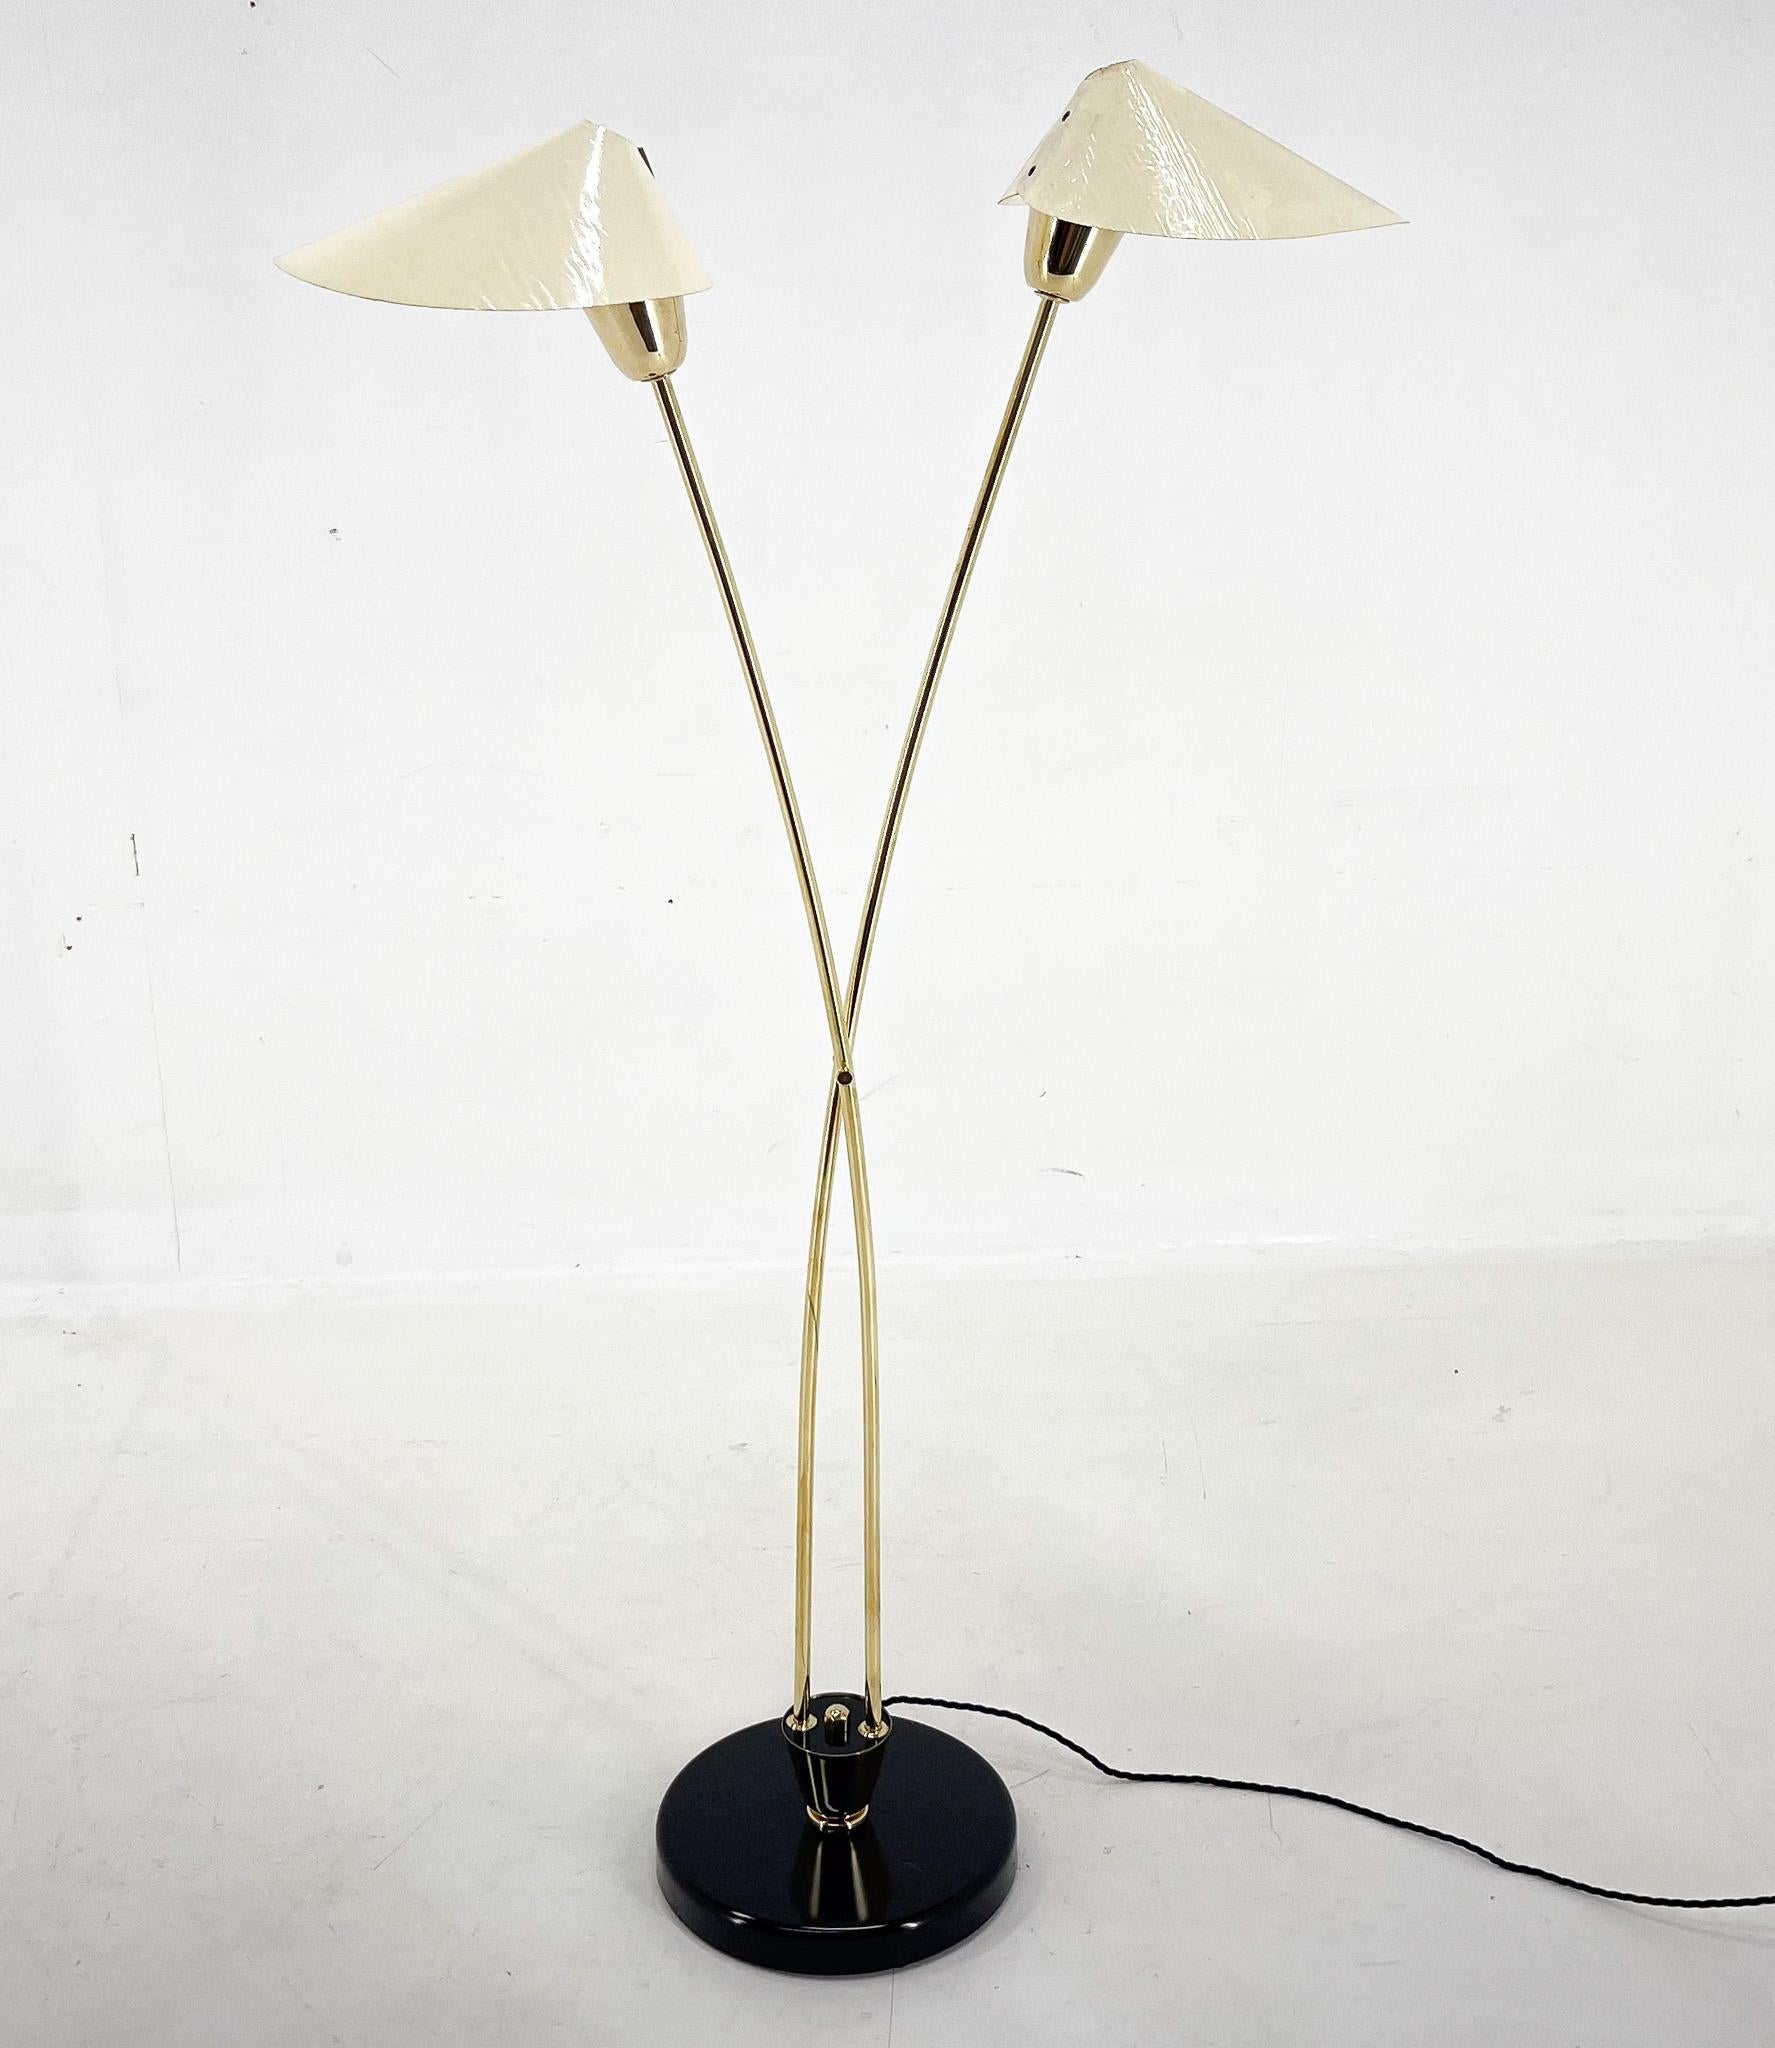 Vintage Stehlampe aus Messing, genannt 'Japanese', hergestellt von der berühmten Napako in der ehemaligen Tschechoslowakei in den 1960er Jahren.  Die Lampe ist restauriert worden. 
Glühbirne: 2 x E26-E27. 
Inklusive US-Steckeradapter.